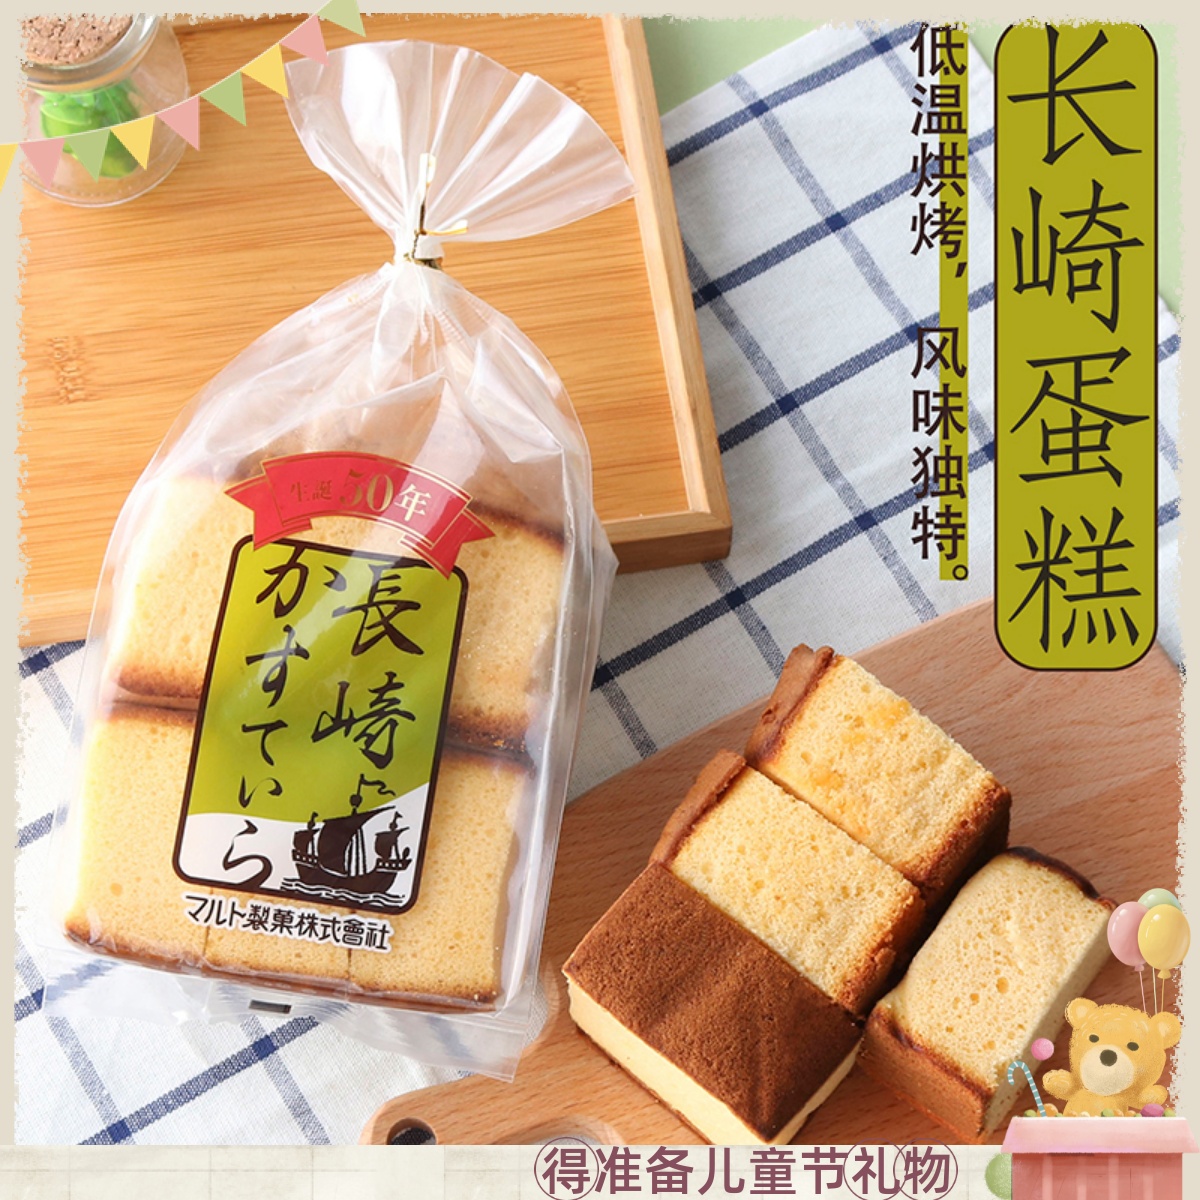 Maruto日本进口丸东玛露托长崎蜂蜜蛋糕宇治抹茶点心早餐面包零食